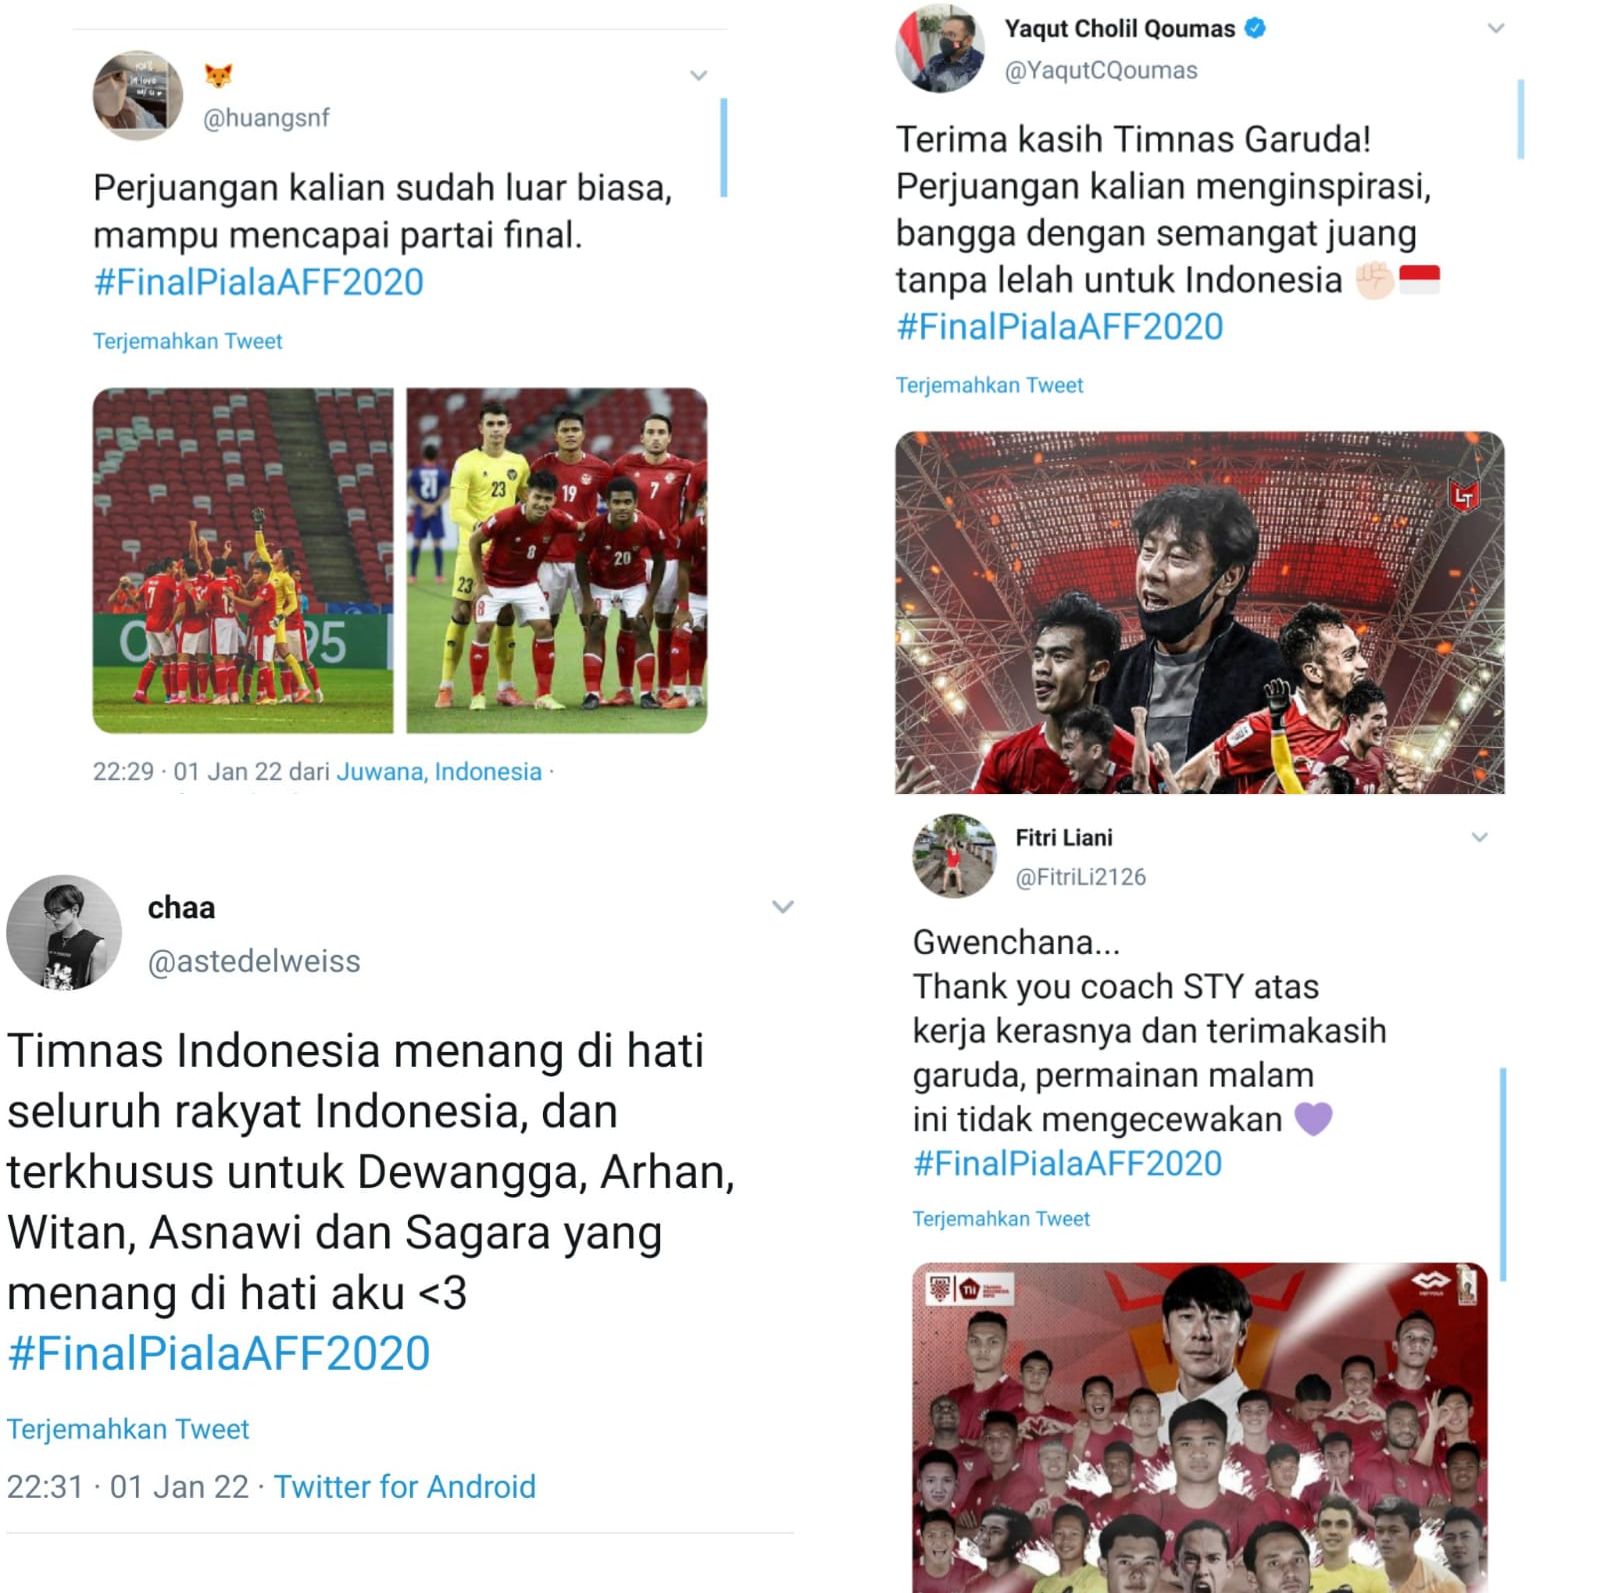 Masyarakat Indonesia bangga atas capaian Timnas Indonesia walau gagal juara